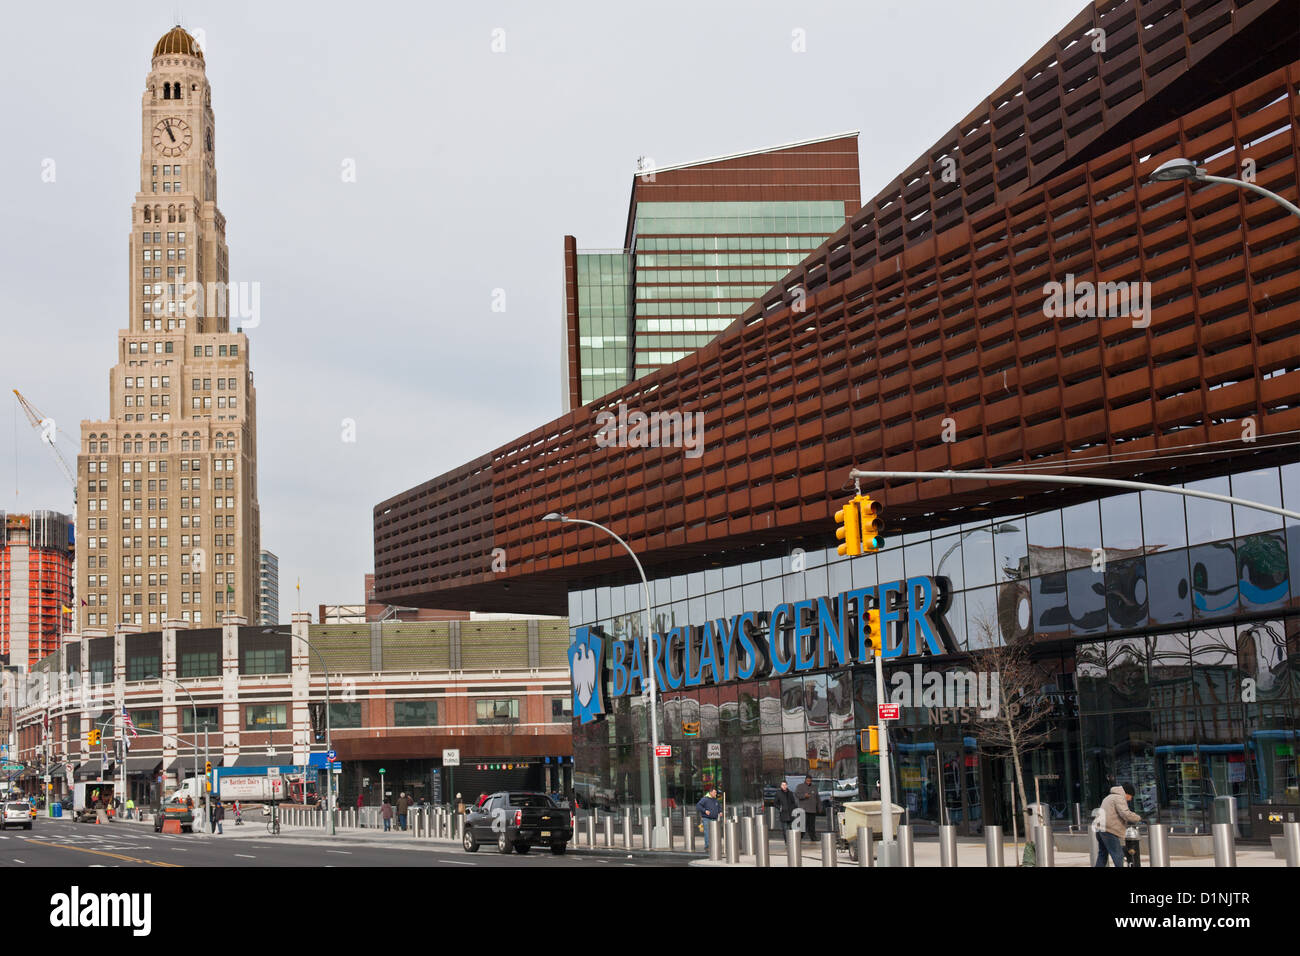 Barclays Center ist ein Mehrzweck-indoor-Arena in Brooklyn, New York. Williamsburg Savings Bank Tower ist auf der linken Seite. Stockfoto